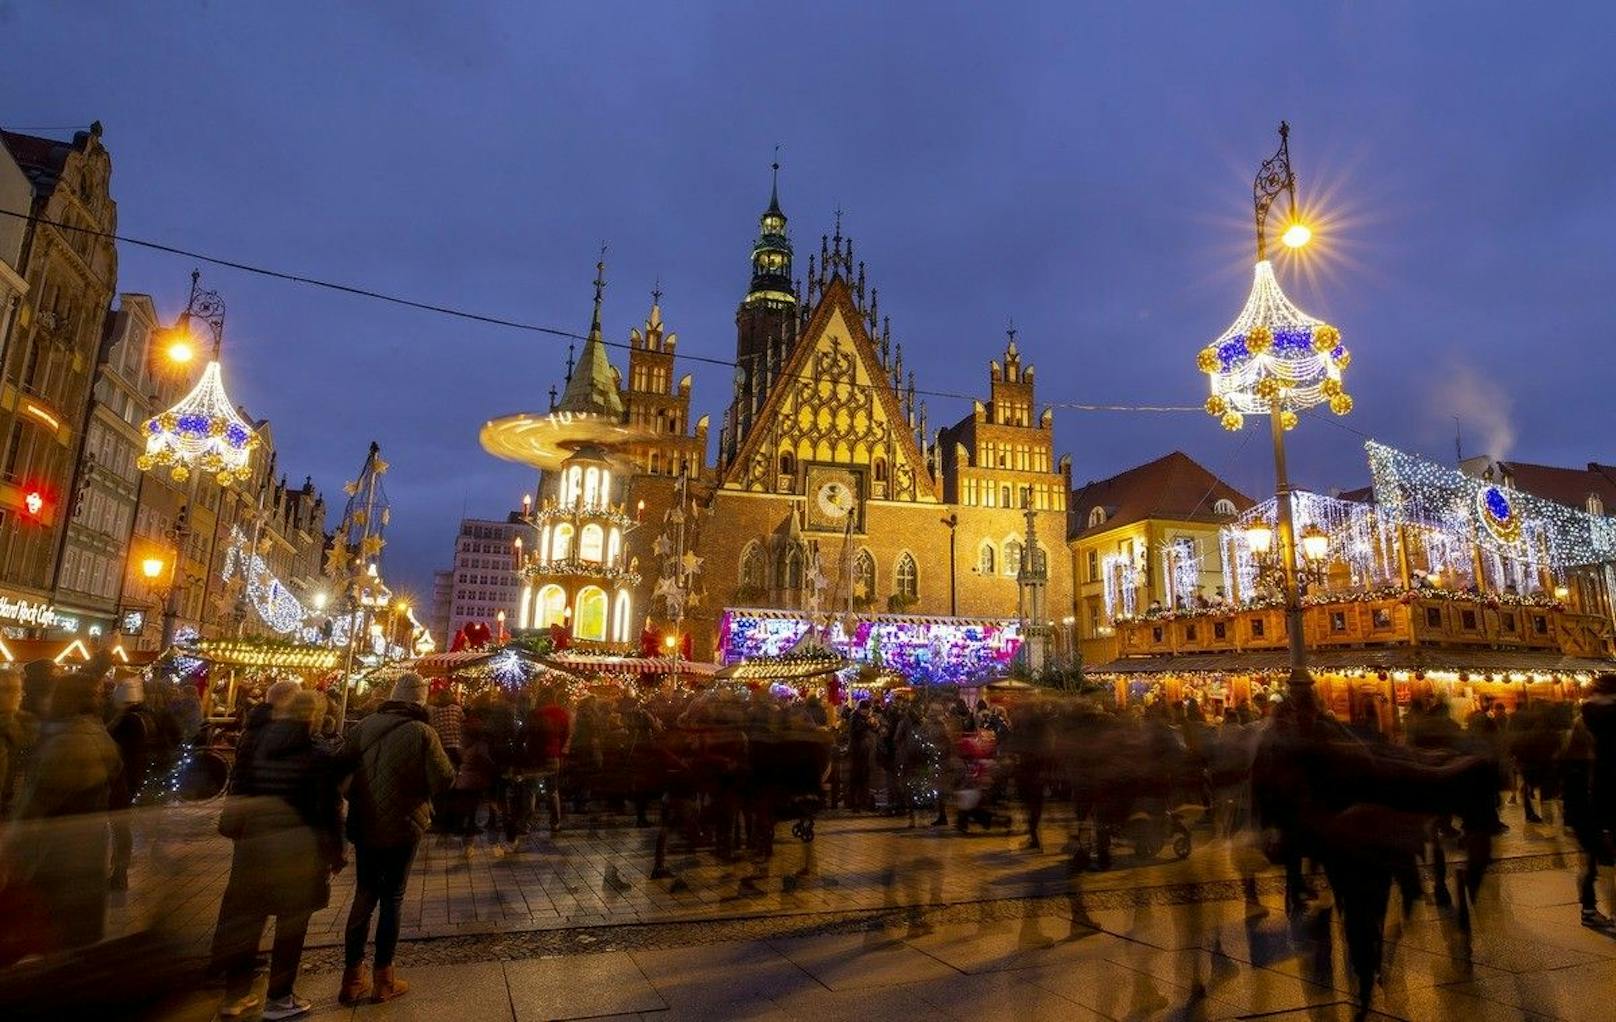 Illuminationen, neue Lichtfiguren, Themenecken, ein venezianisches Karussell - all das gibt es auf dem Weihnachtsmarkt in Gdańsk zu bestaunen.